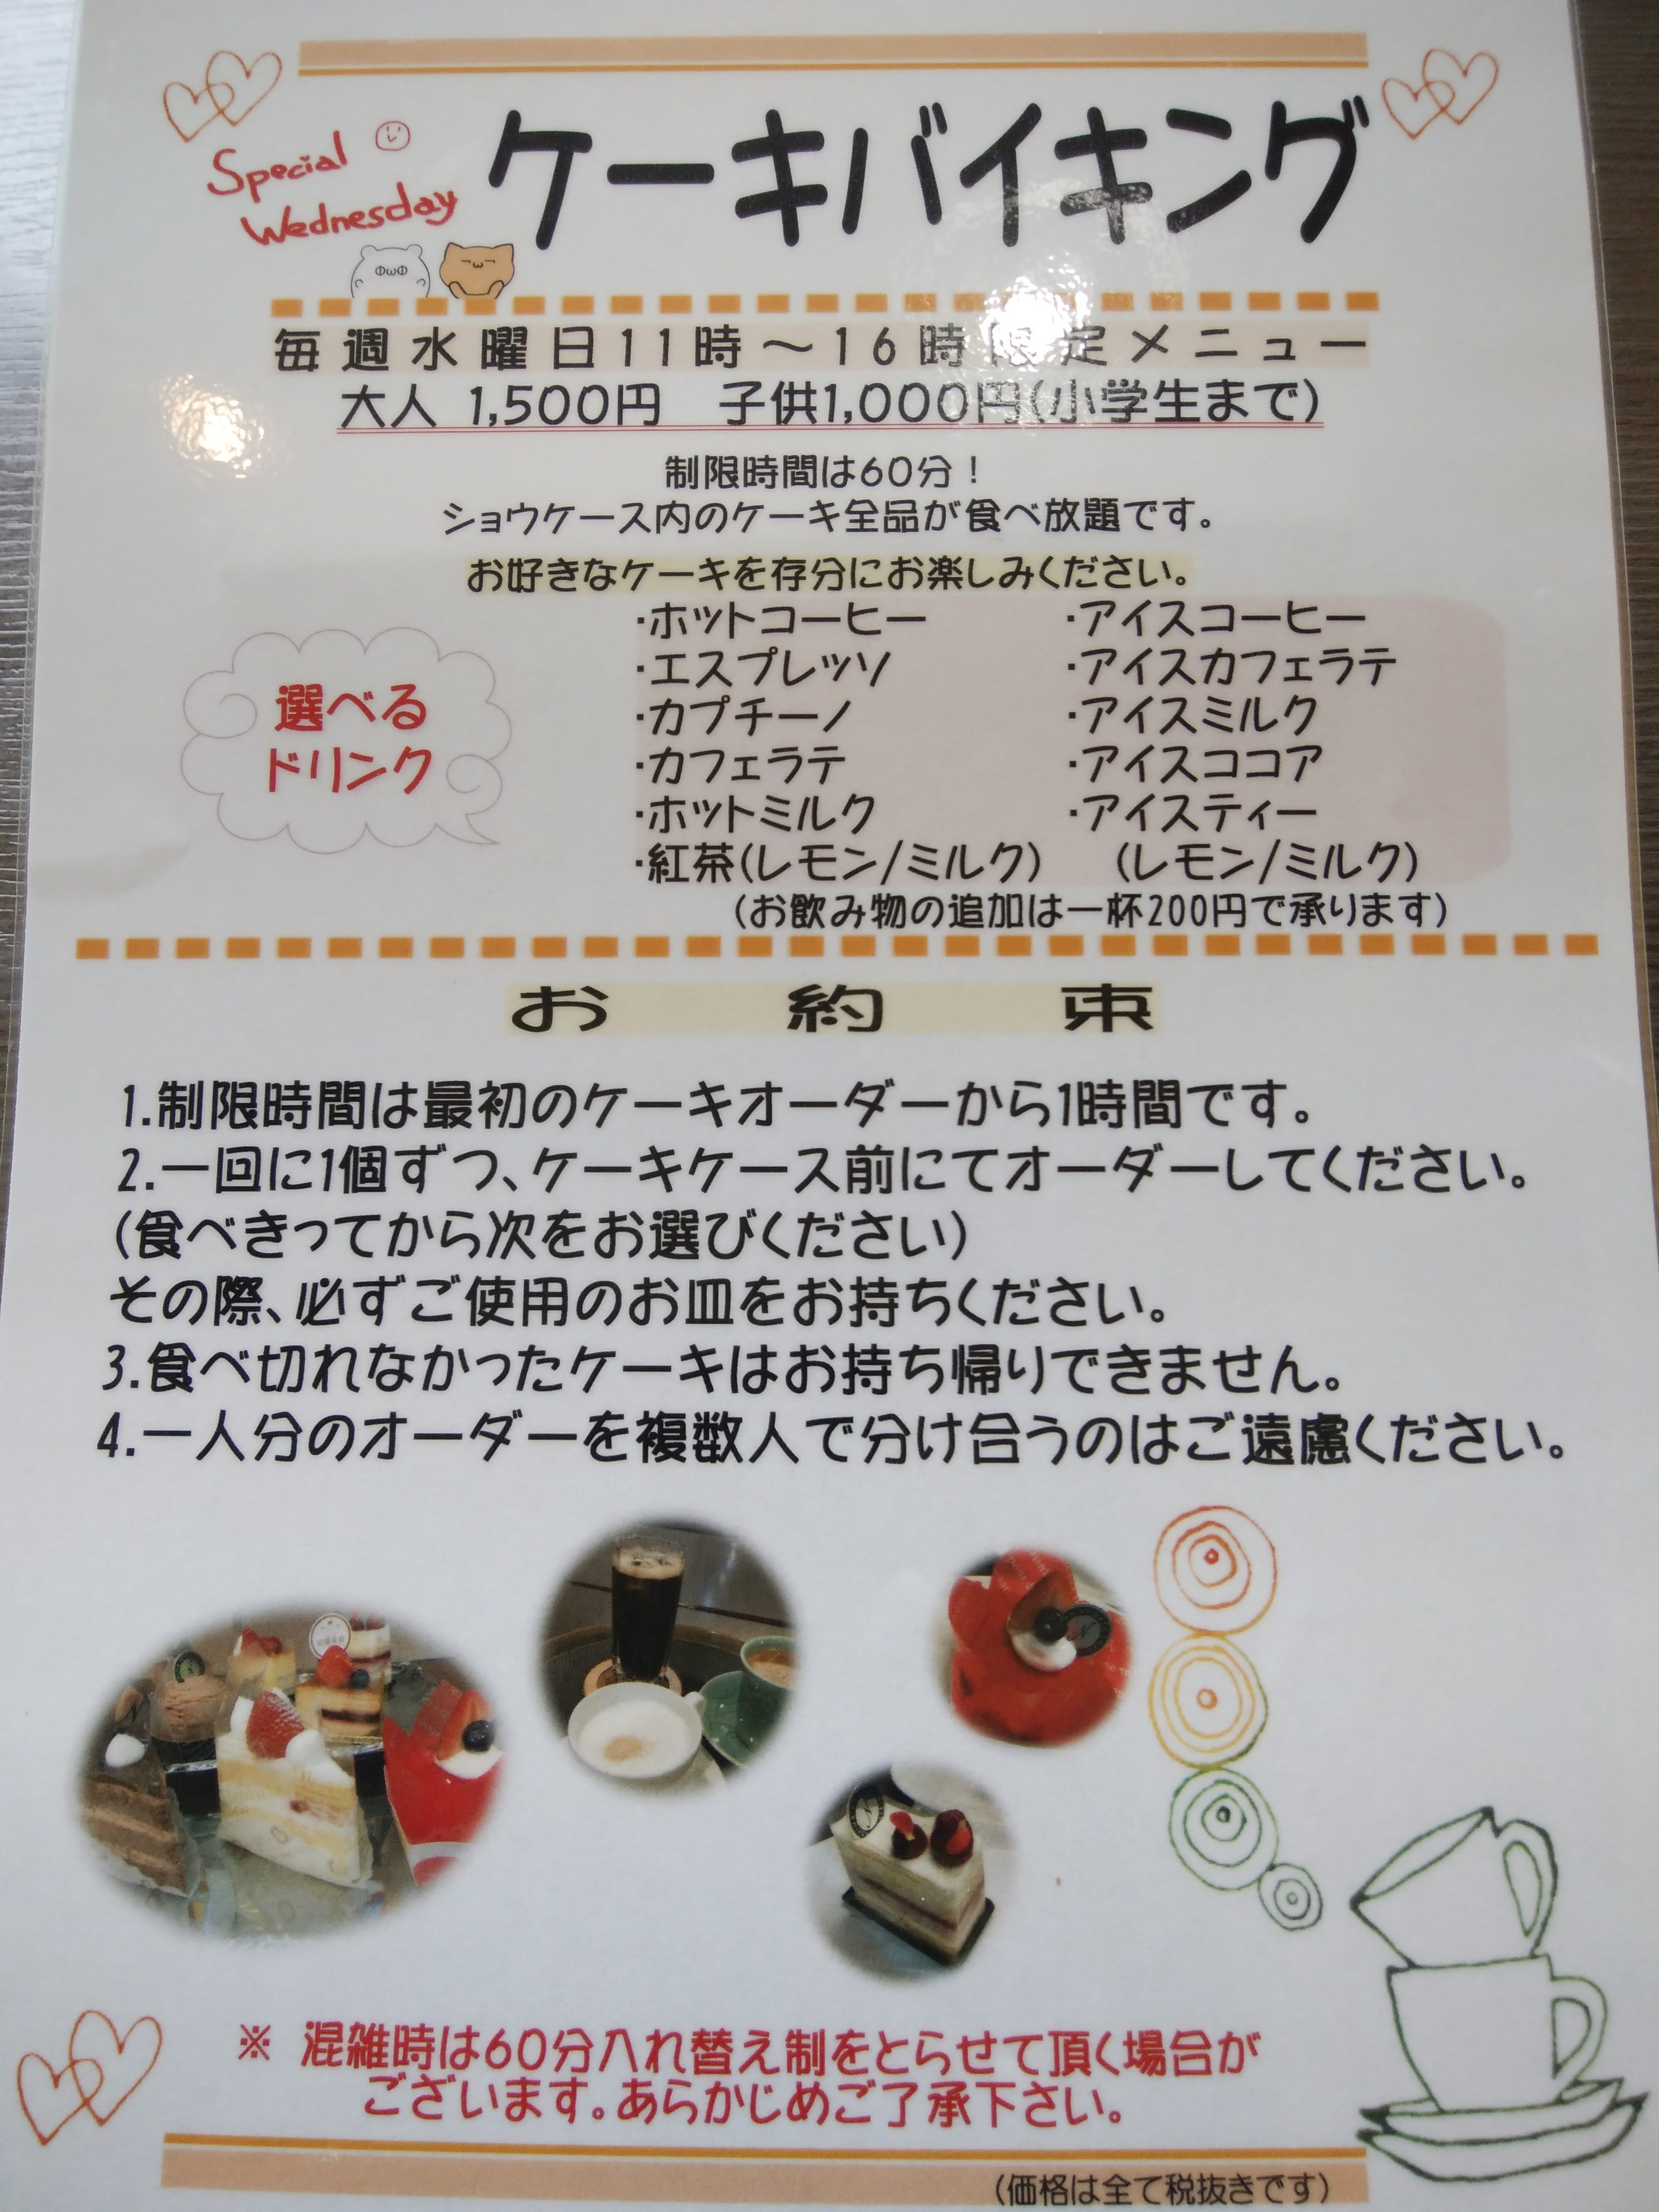 新潟スイーツ ナカシマ 糸魚川市 三度の飯よりケーキ好き 三重県にもっとケーキバイキングを